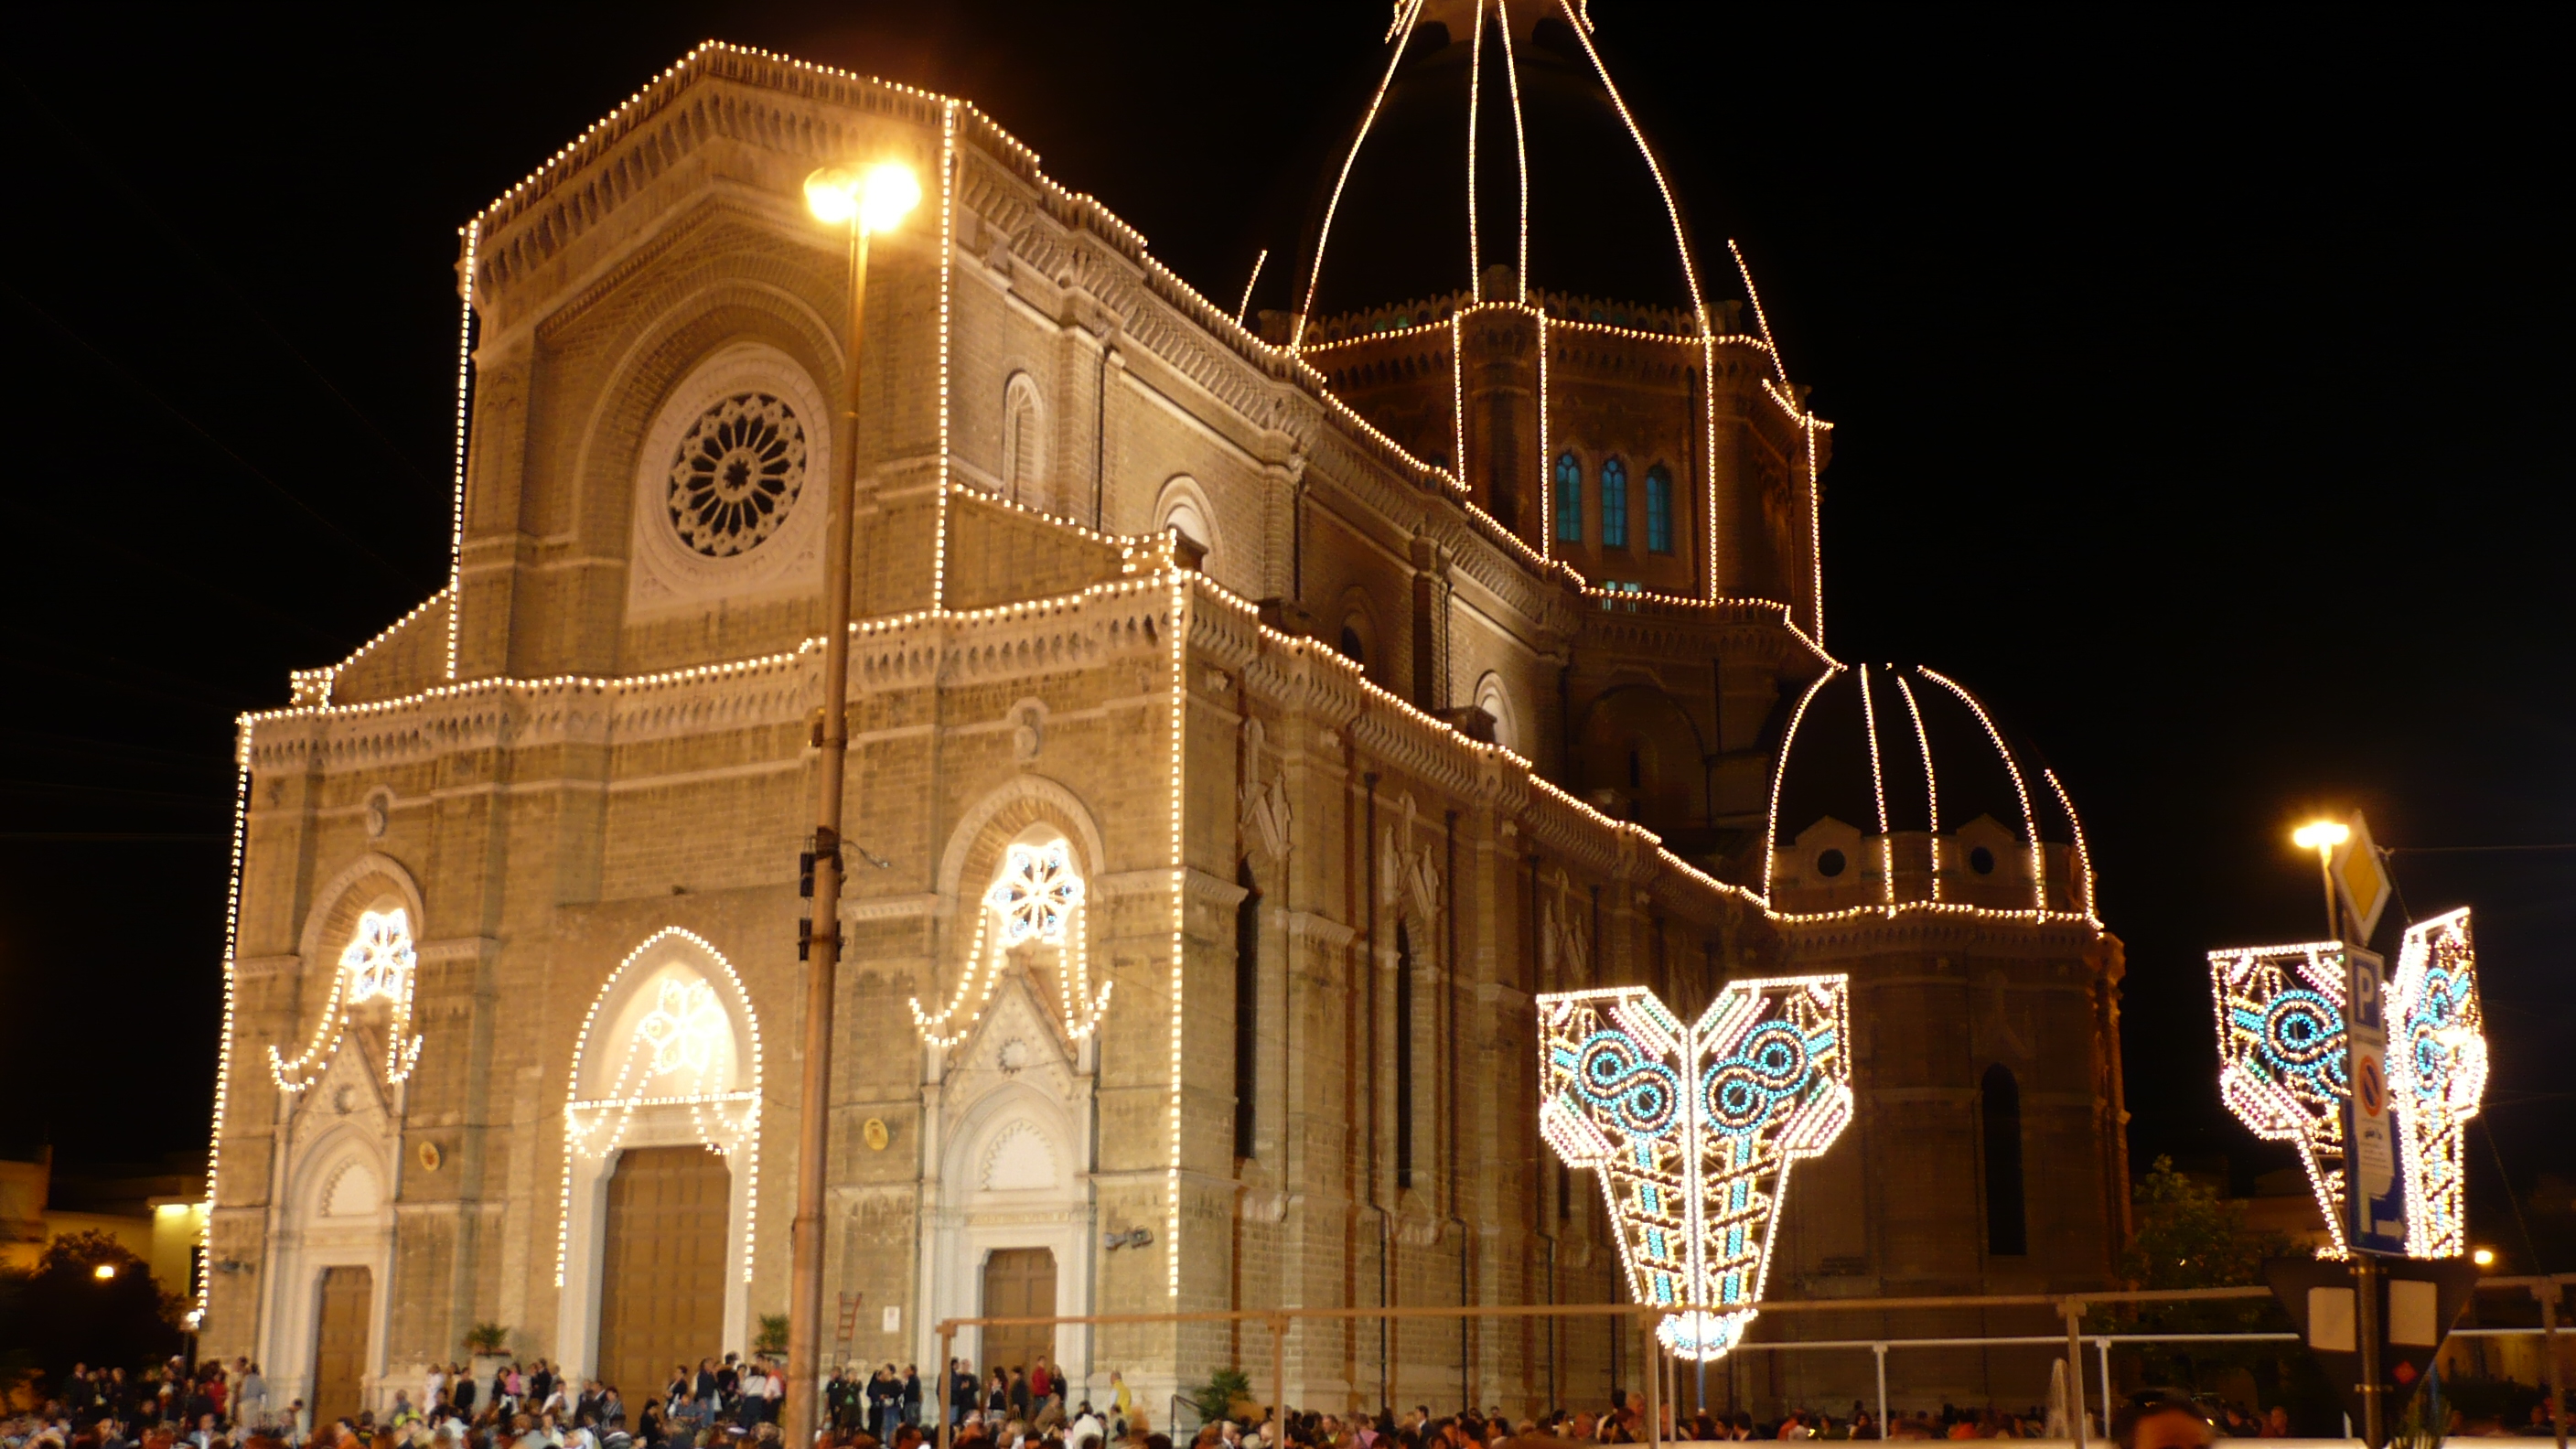 Cathedral of Cerignola